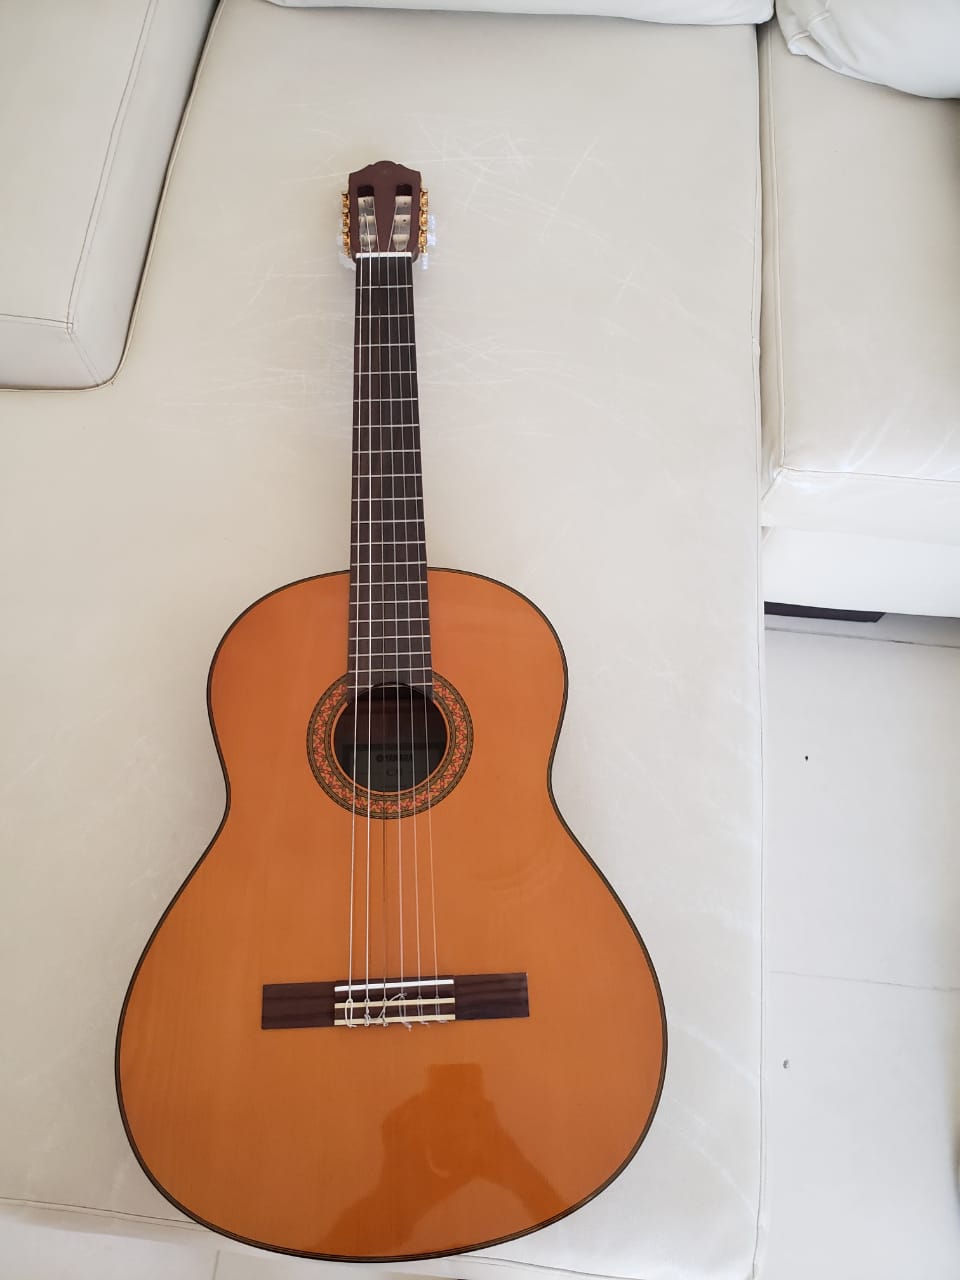 instrumentos musicales - Guitarra Yamaha C70 clásica. En excelentes condiciones. Precio negociable.